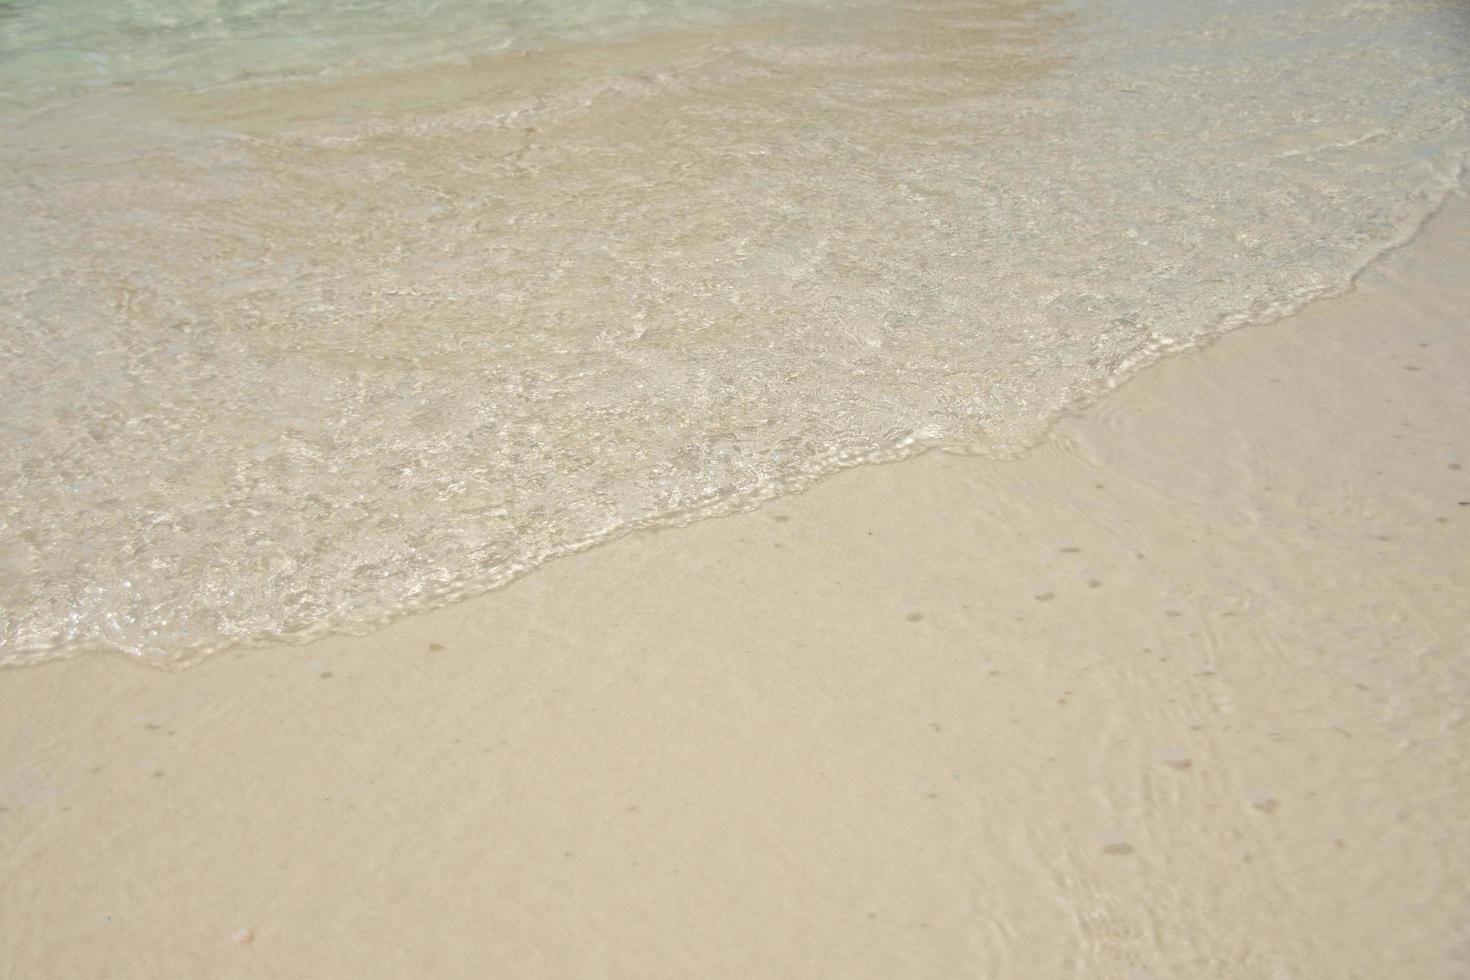 mooie zachte golf op zand aan de zee zonnige dag foto